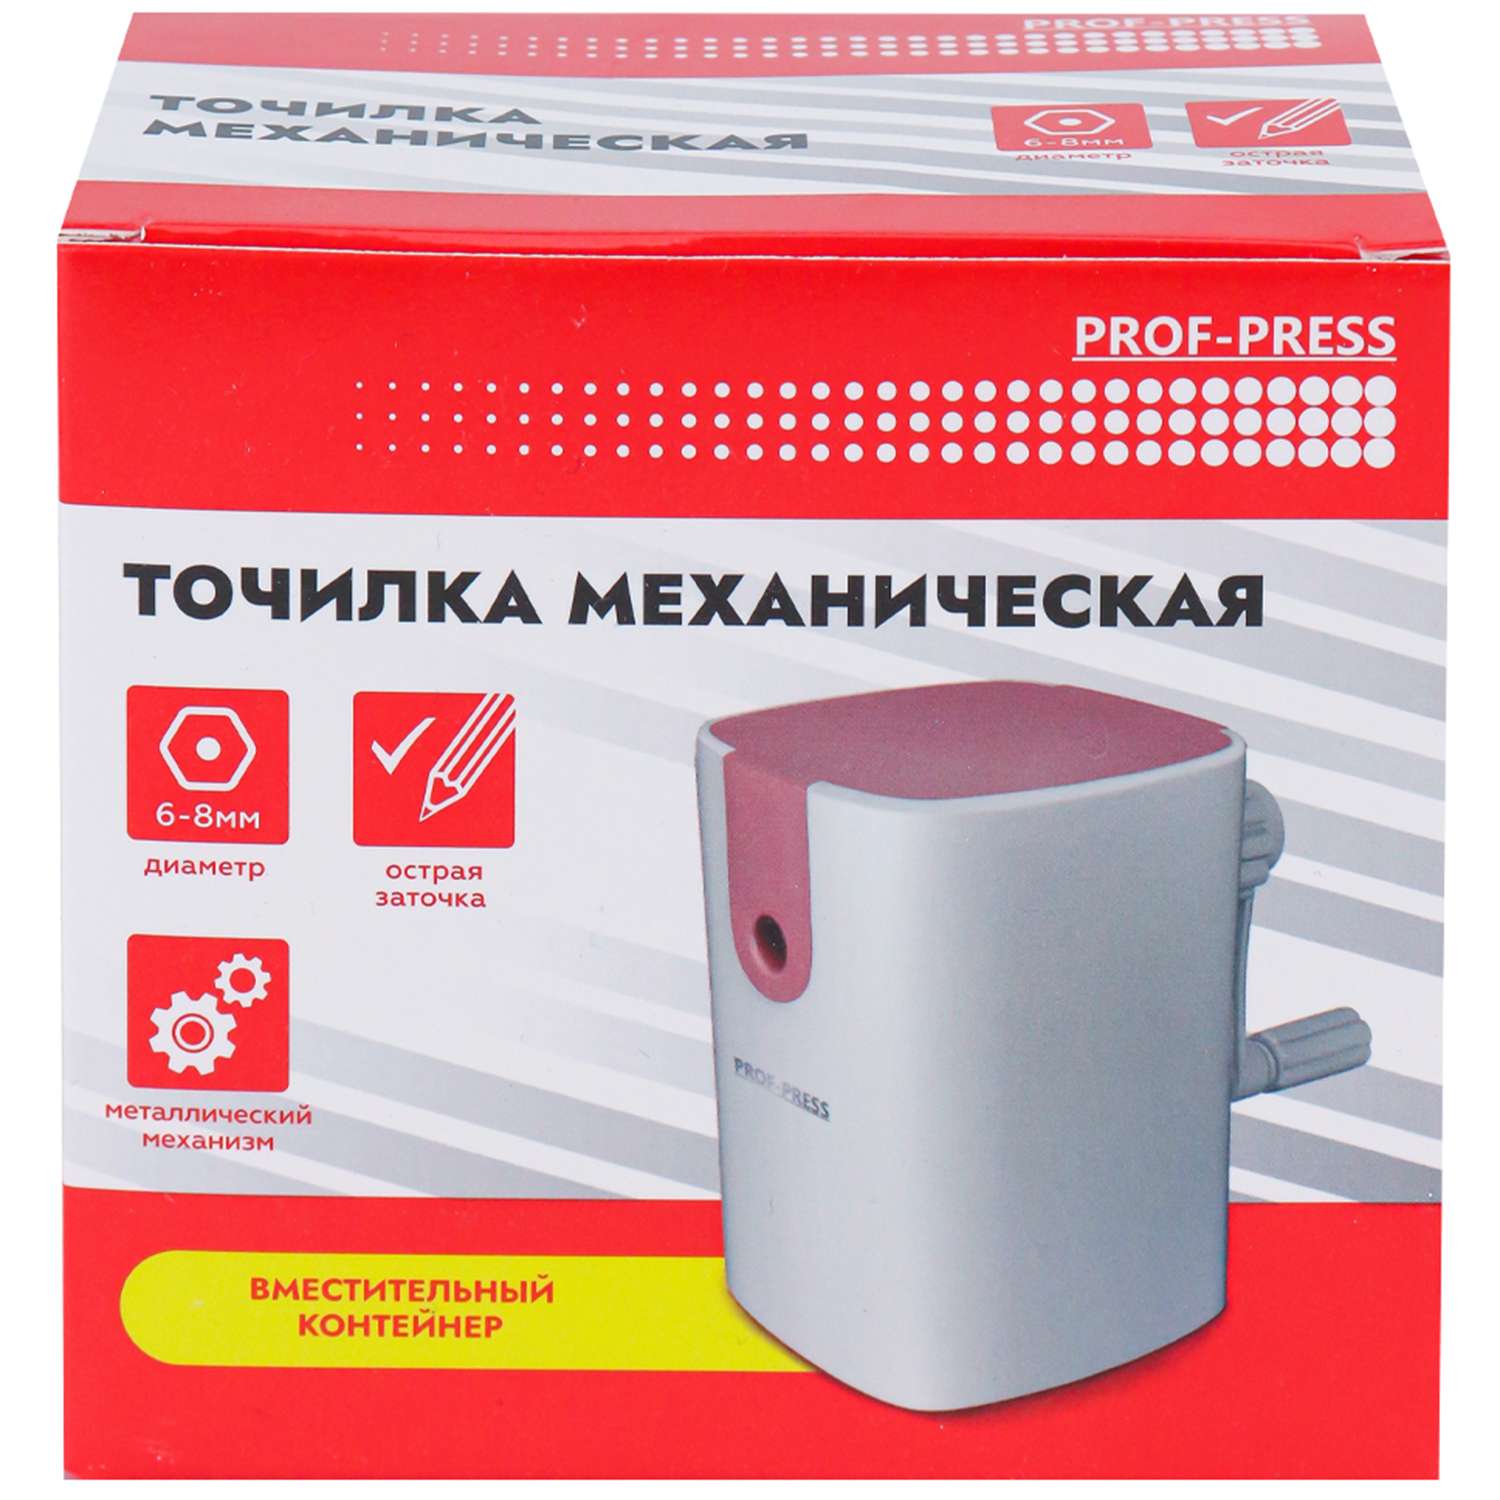 Точилка для карандашей Prof-Press механическая 1 отвестие пластик корпус розовый - фото 7